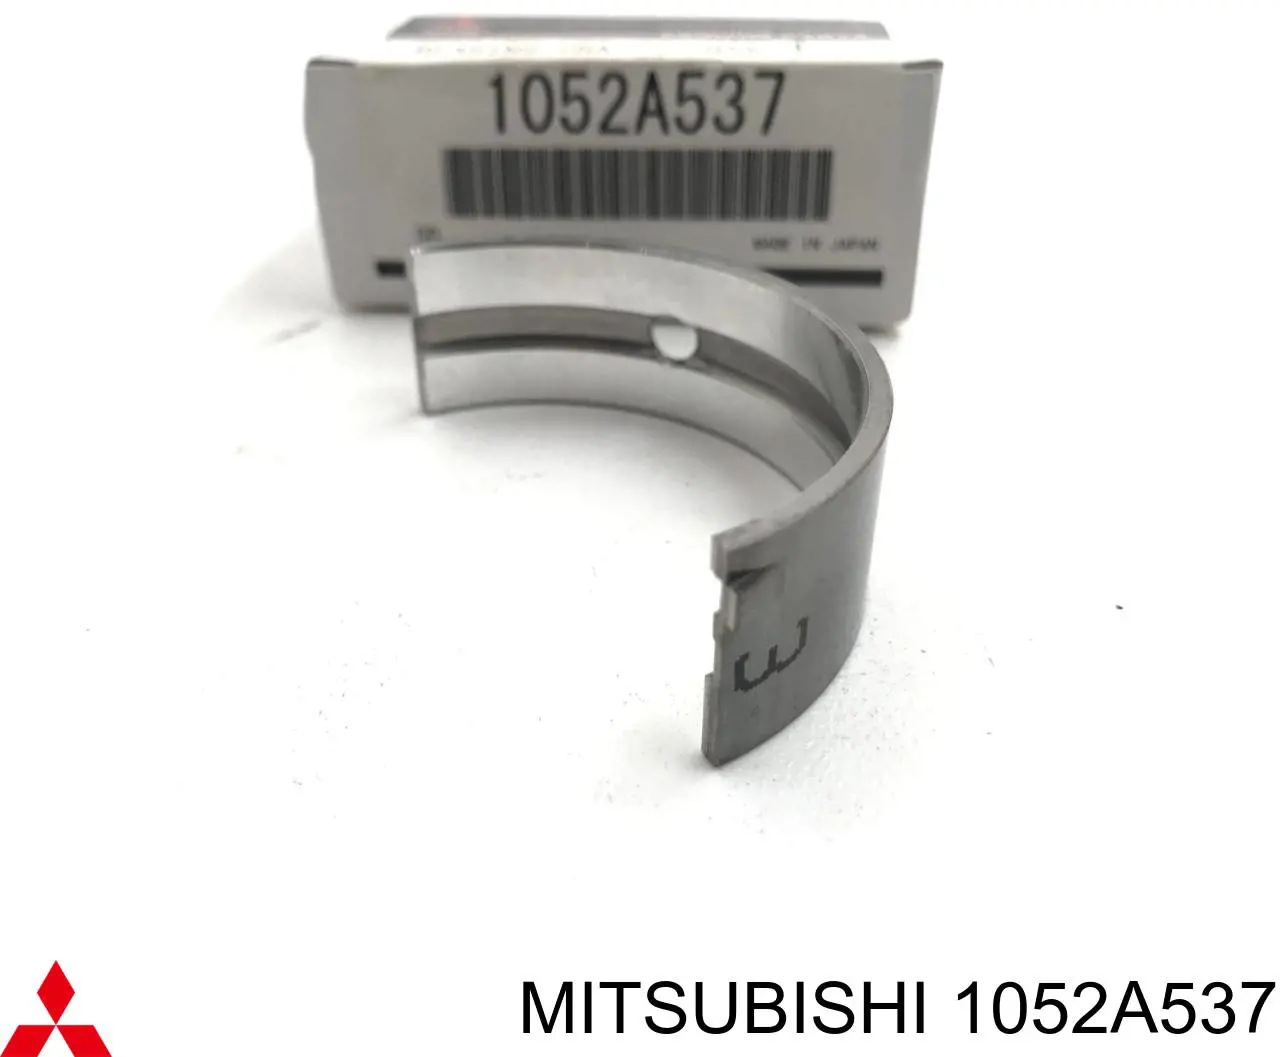 1052A537 Mitsubishi juego de cojinetes de cigüeñal, estándar, (std)